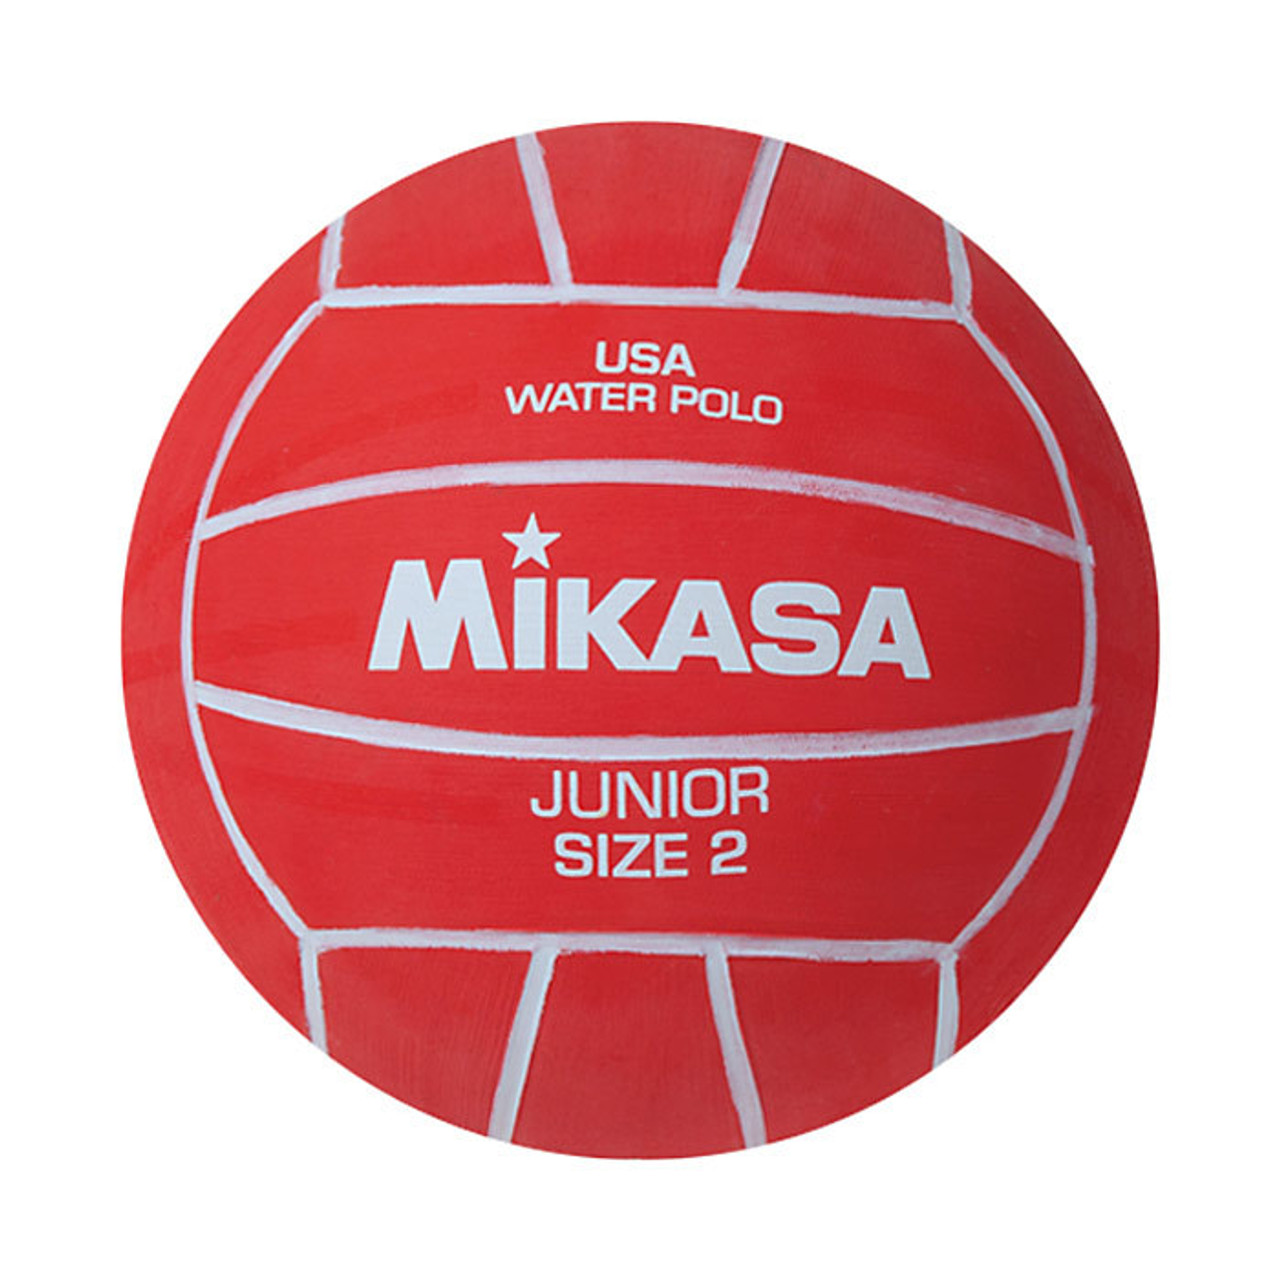 Taglia 2 Mikasa Water Polo Ball   Ragazzi 